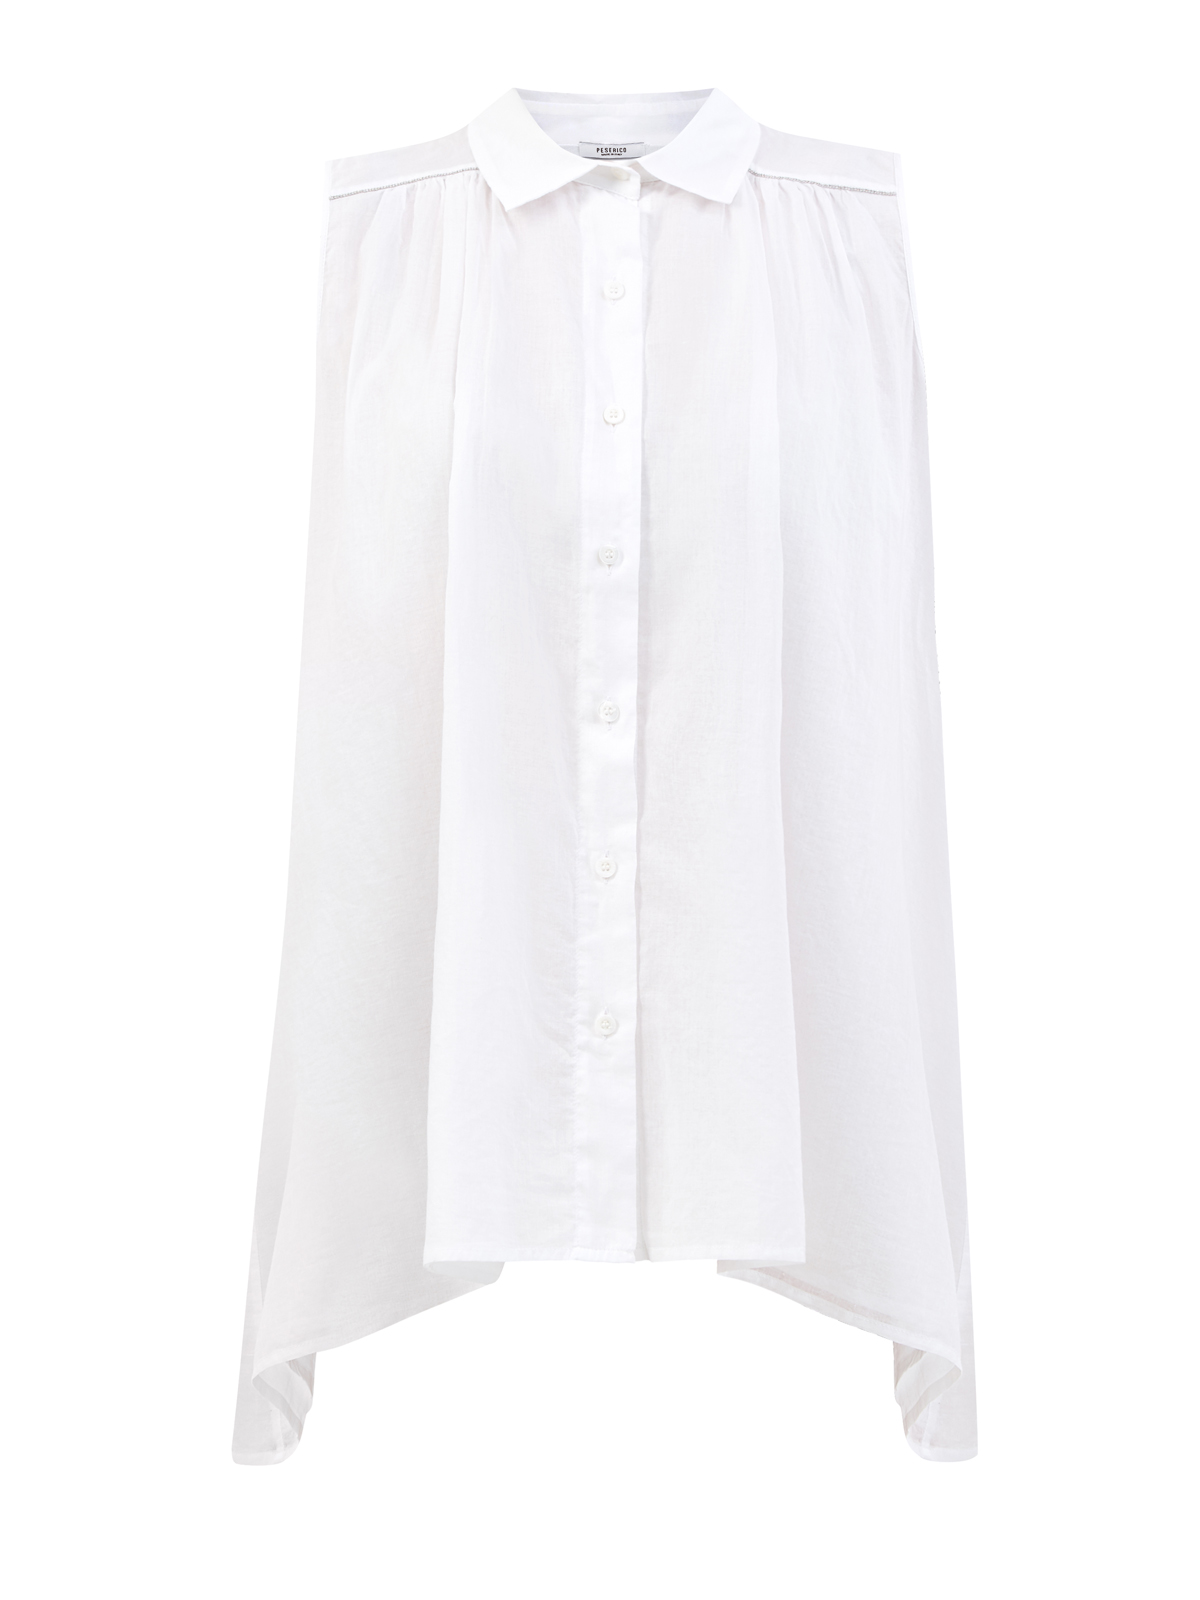 Удлиненная блуза асимметричного кроя из хлопка PESERICO, цвет белый, размер 40;42;44;46;38